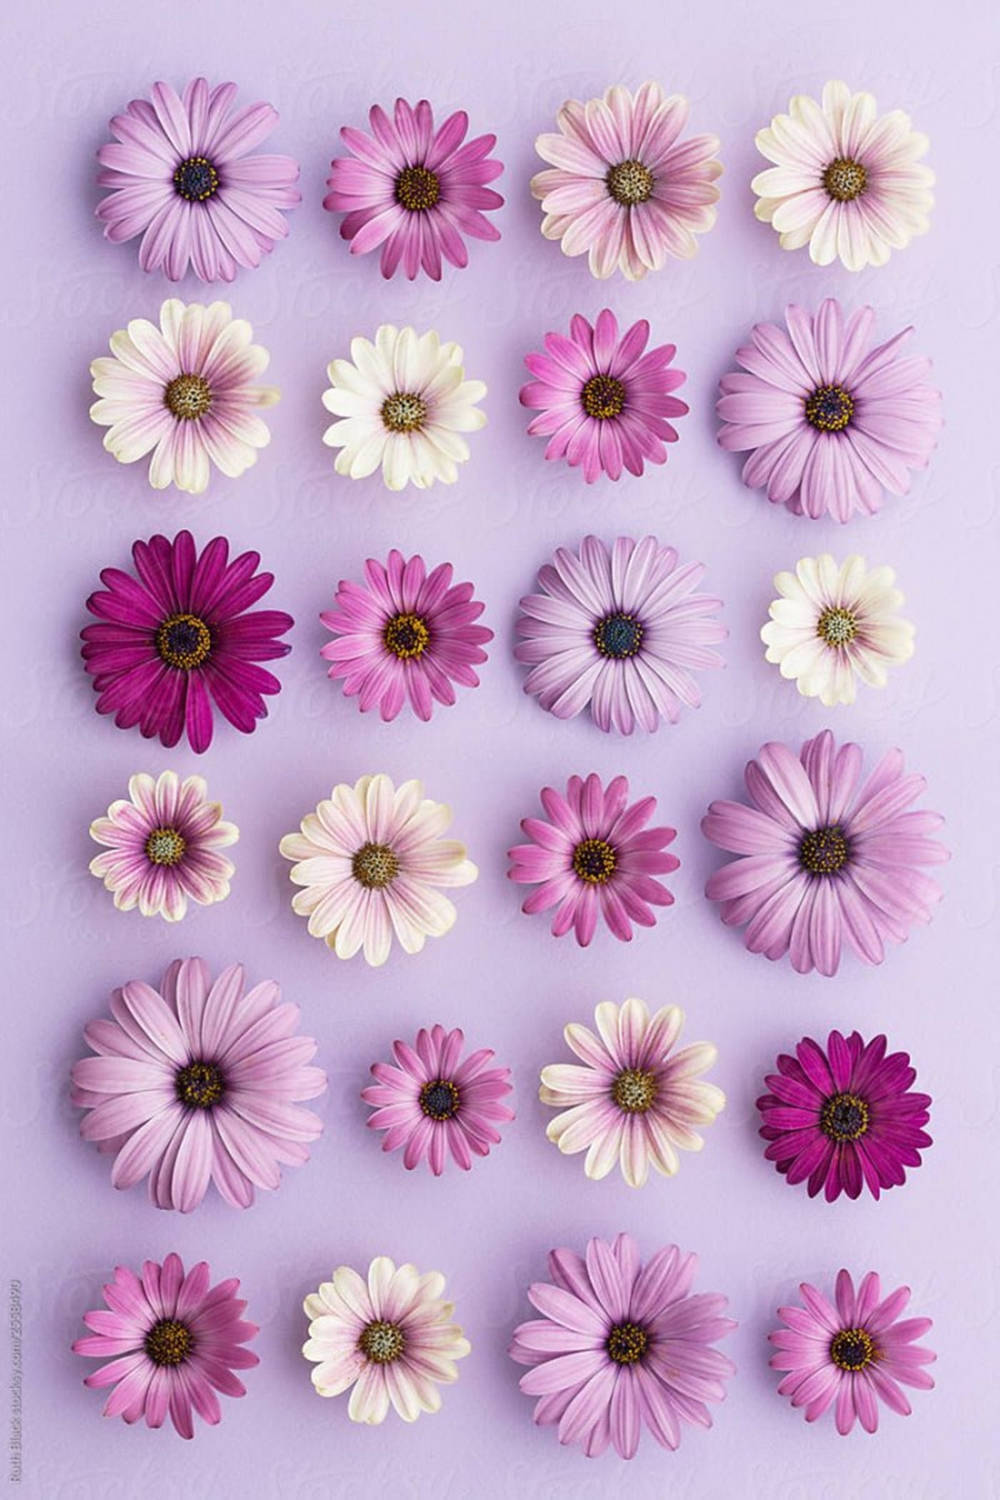 Lilagänseblümchen-flat-lay-handy Wallpaper